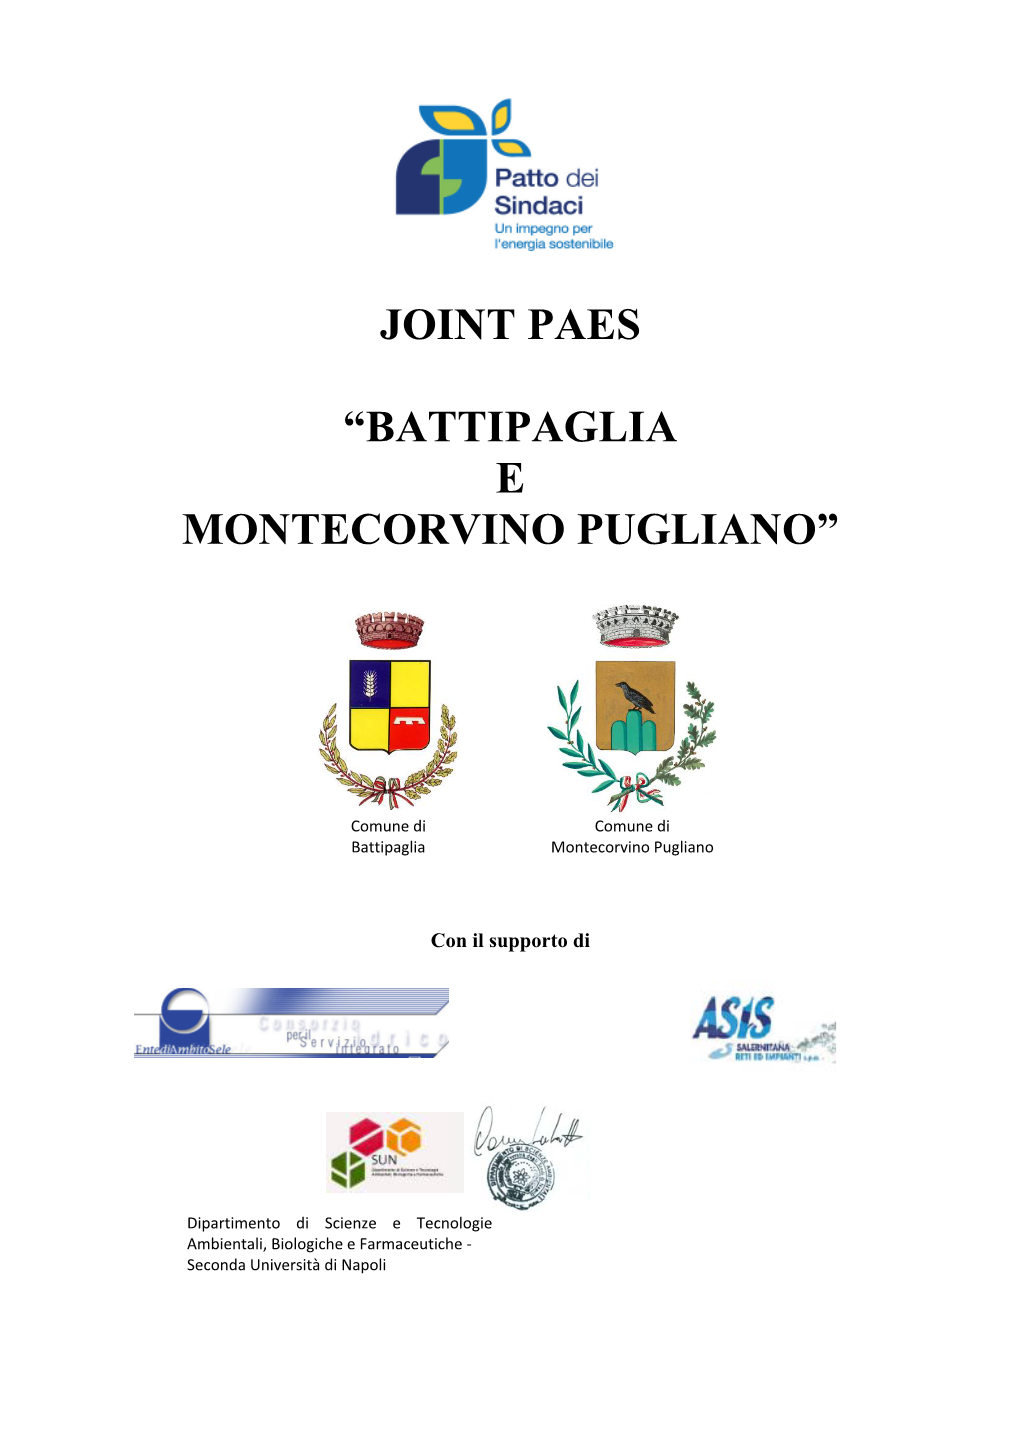 JOINT PAES “Battipaglia E Montecorvino Pugliano”